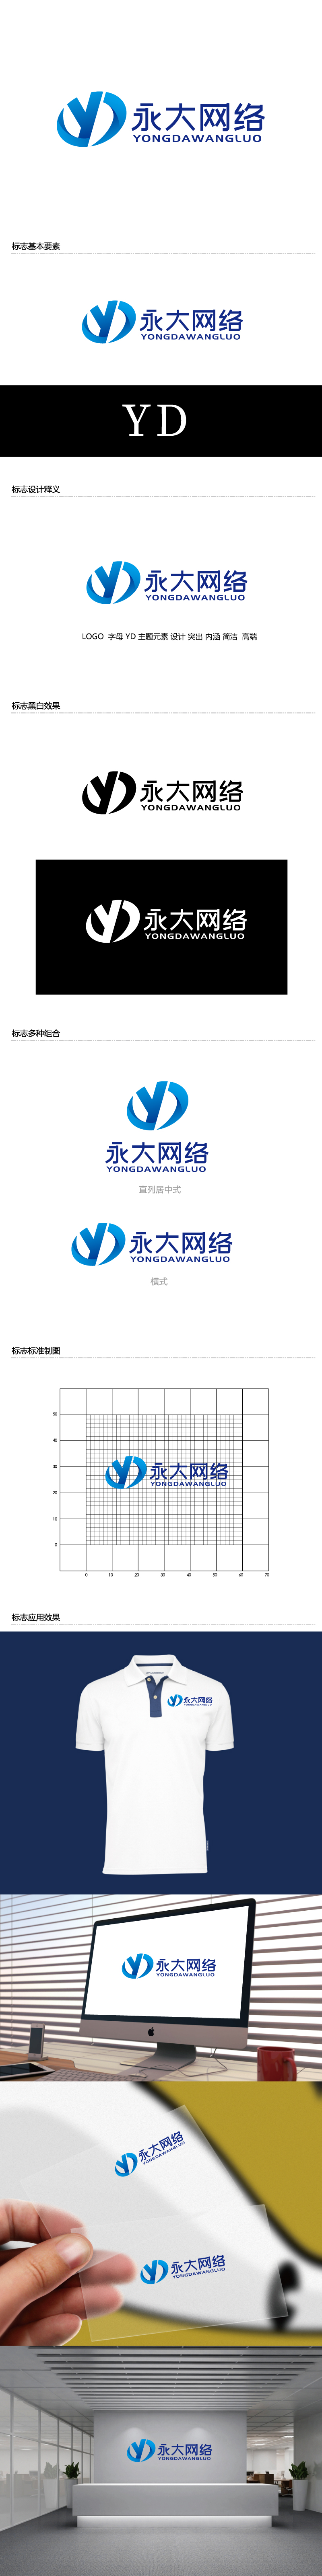 张俊的永大网络logo设计